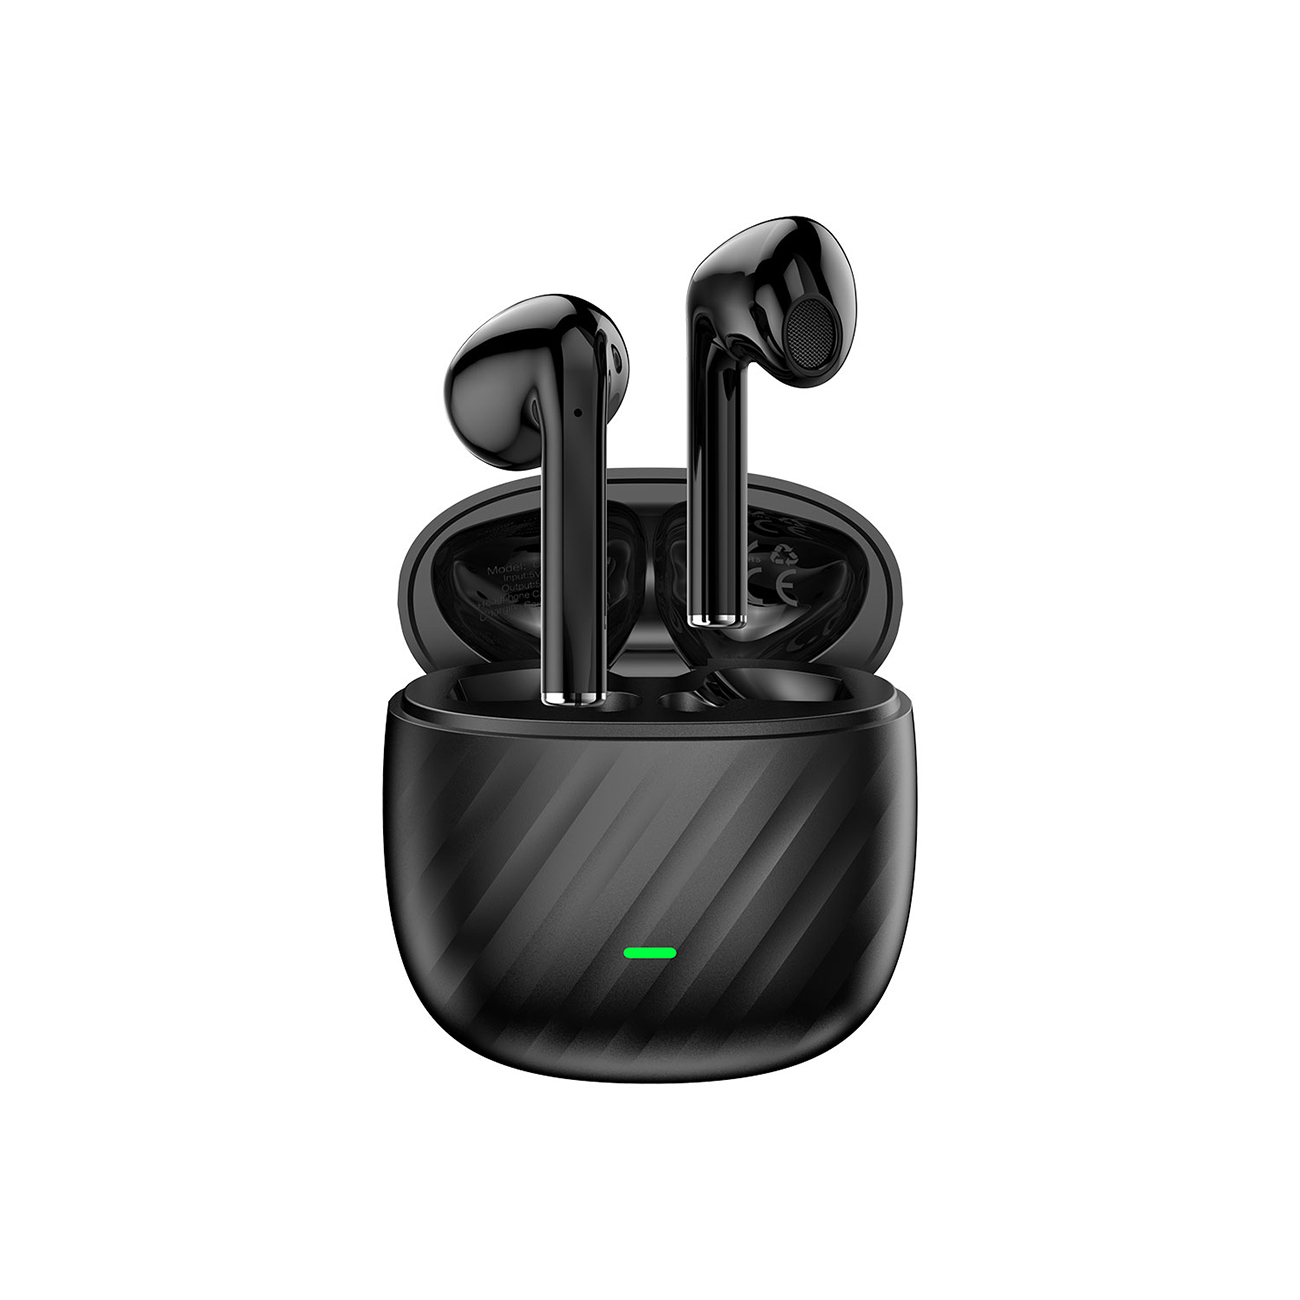 Dudao U14+ kabellose In-Ear-TWS-Kopfhörer auf weißem Hintergrund